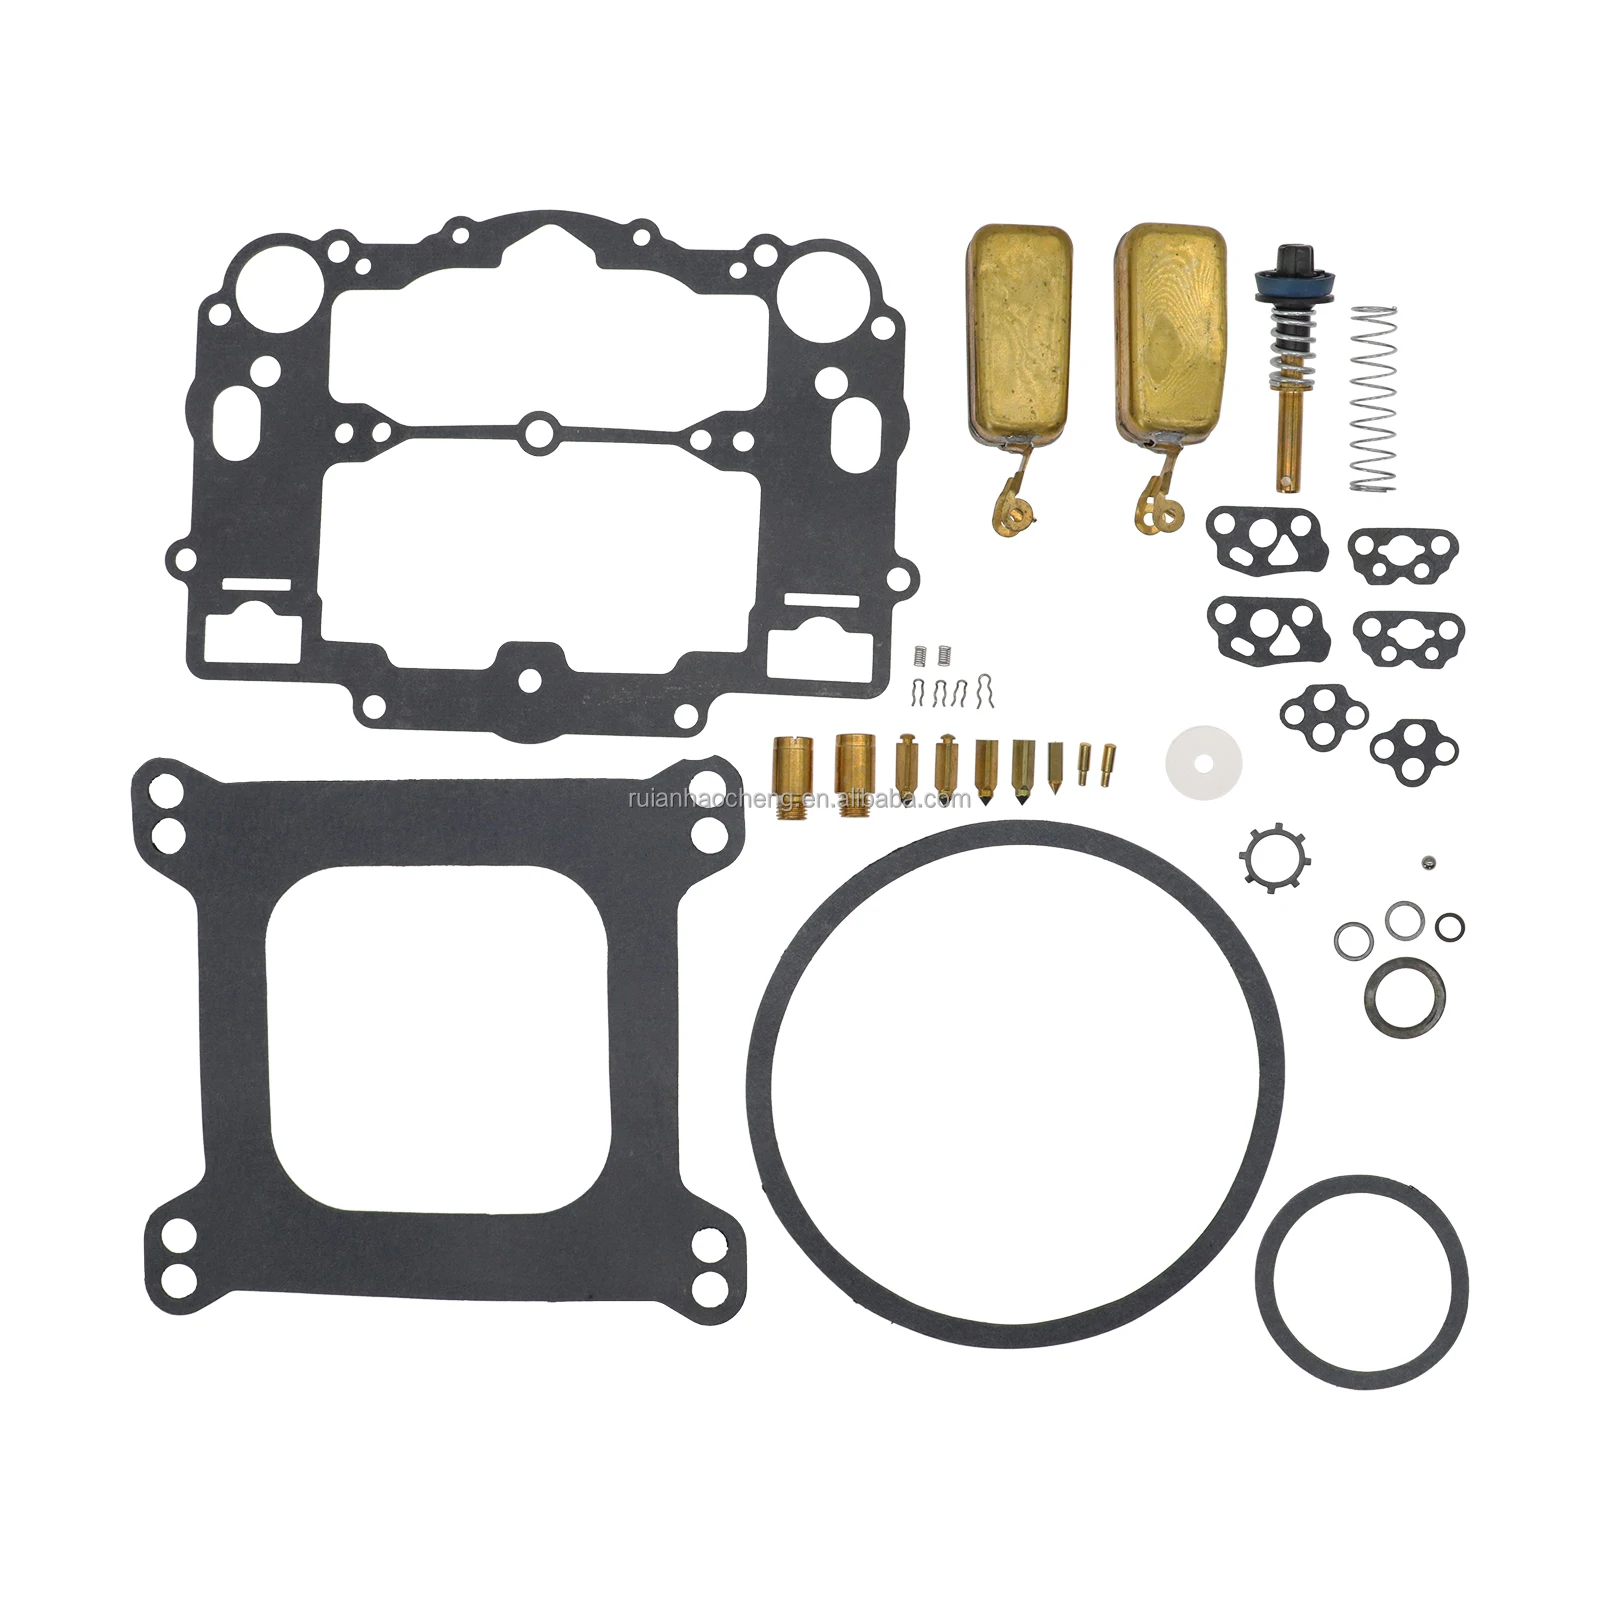 Carburetor Rebuild Kit For Edelbrock 1477 1400 1404 1405 1406 1407 1411 1409 With Brass Floats (1600271484990)